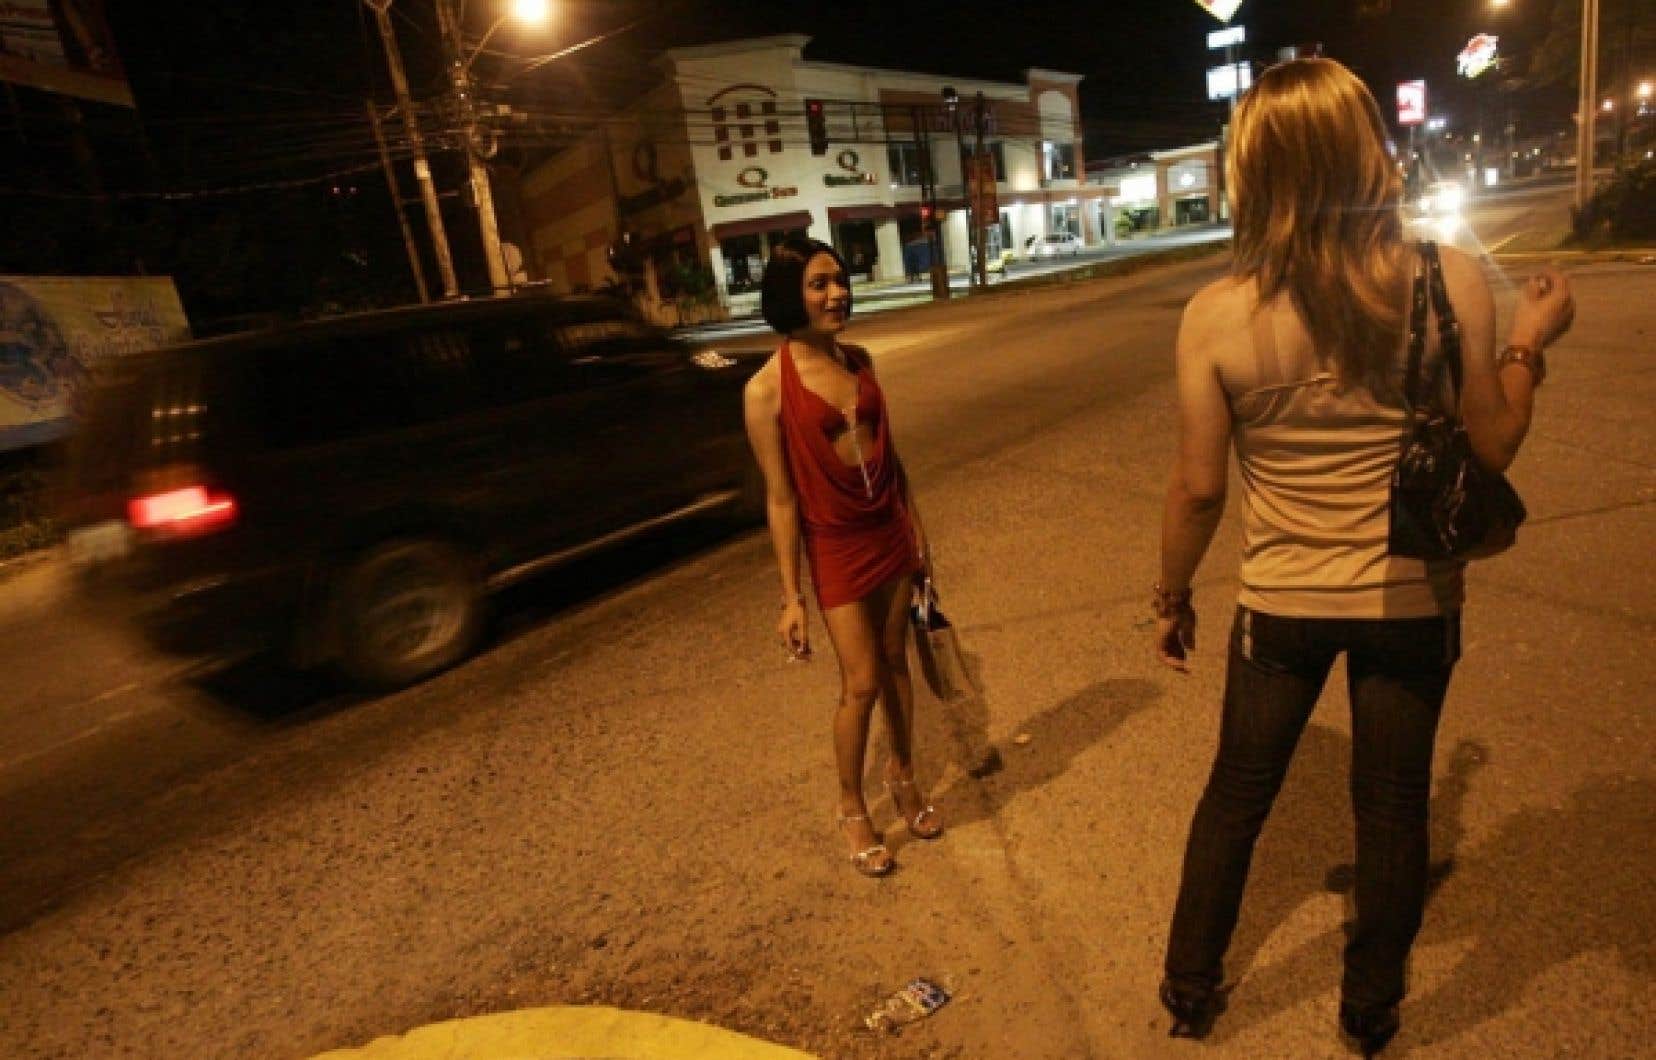  Ziar nad Hronom, Slovakia prostitutes